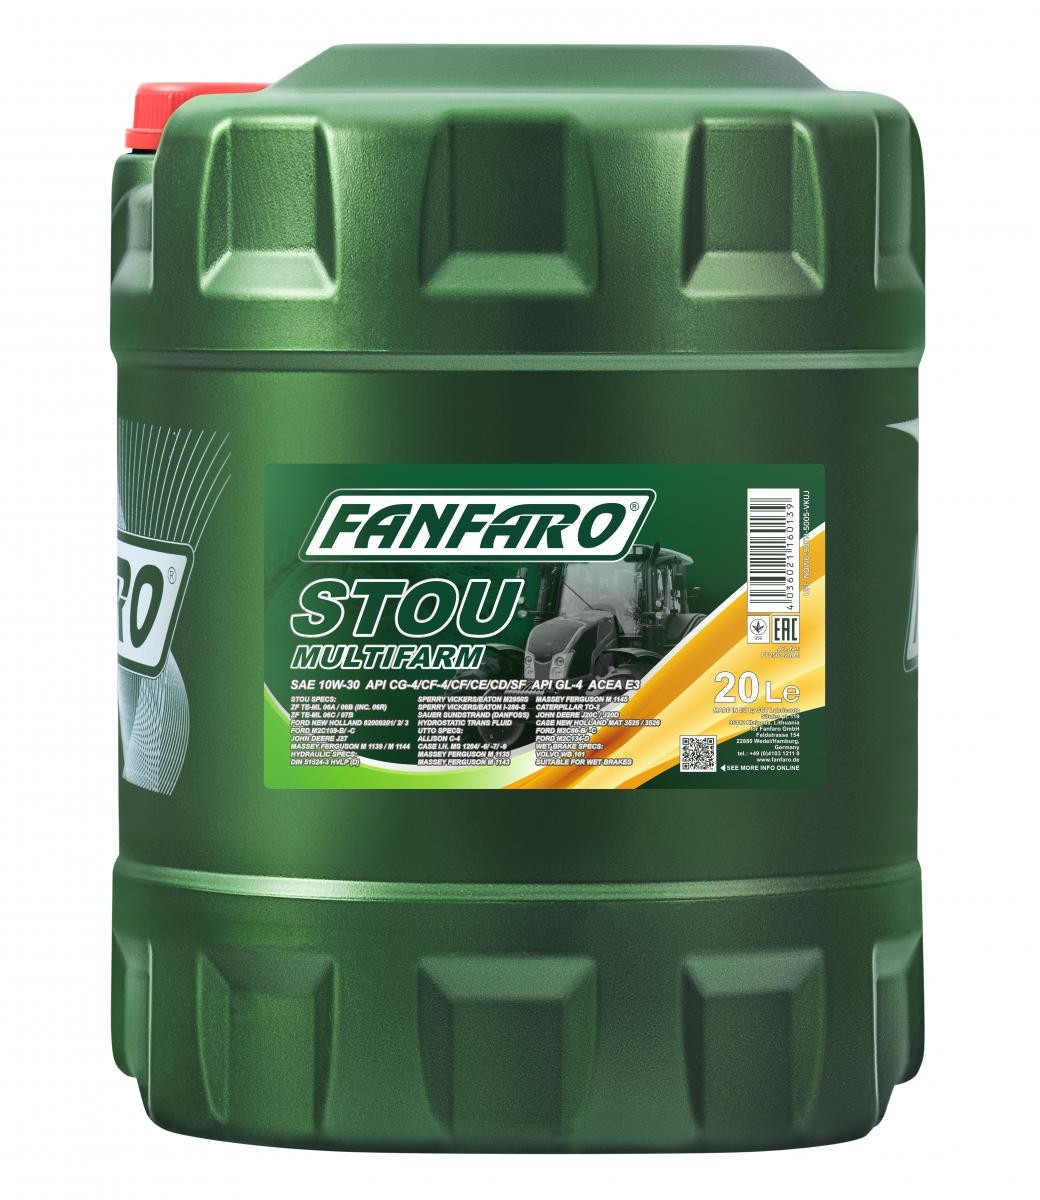 FANFARO STOU Multifarm 10W-30, 20l Motor oil FF2501-20 buy